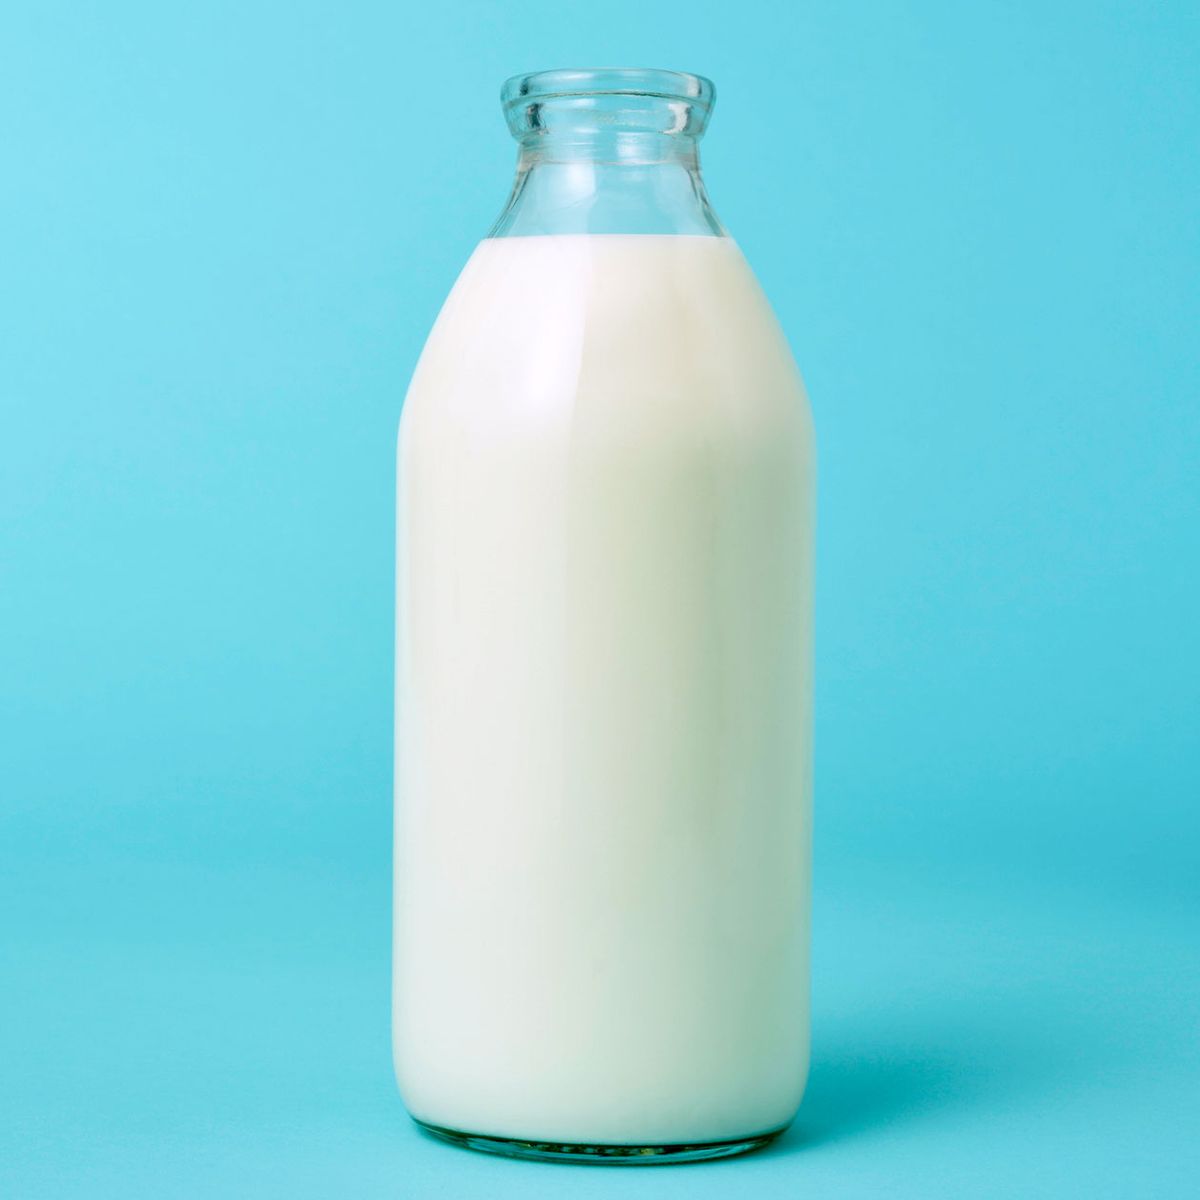 Ist Milch gesund?